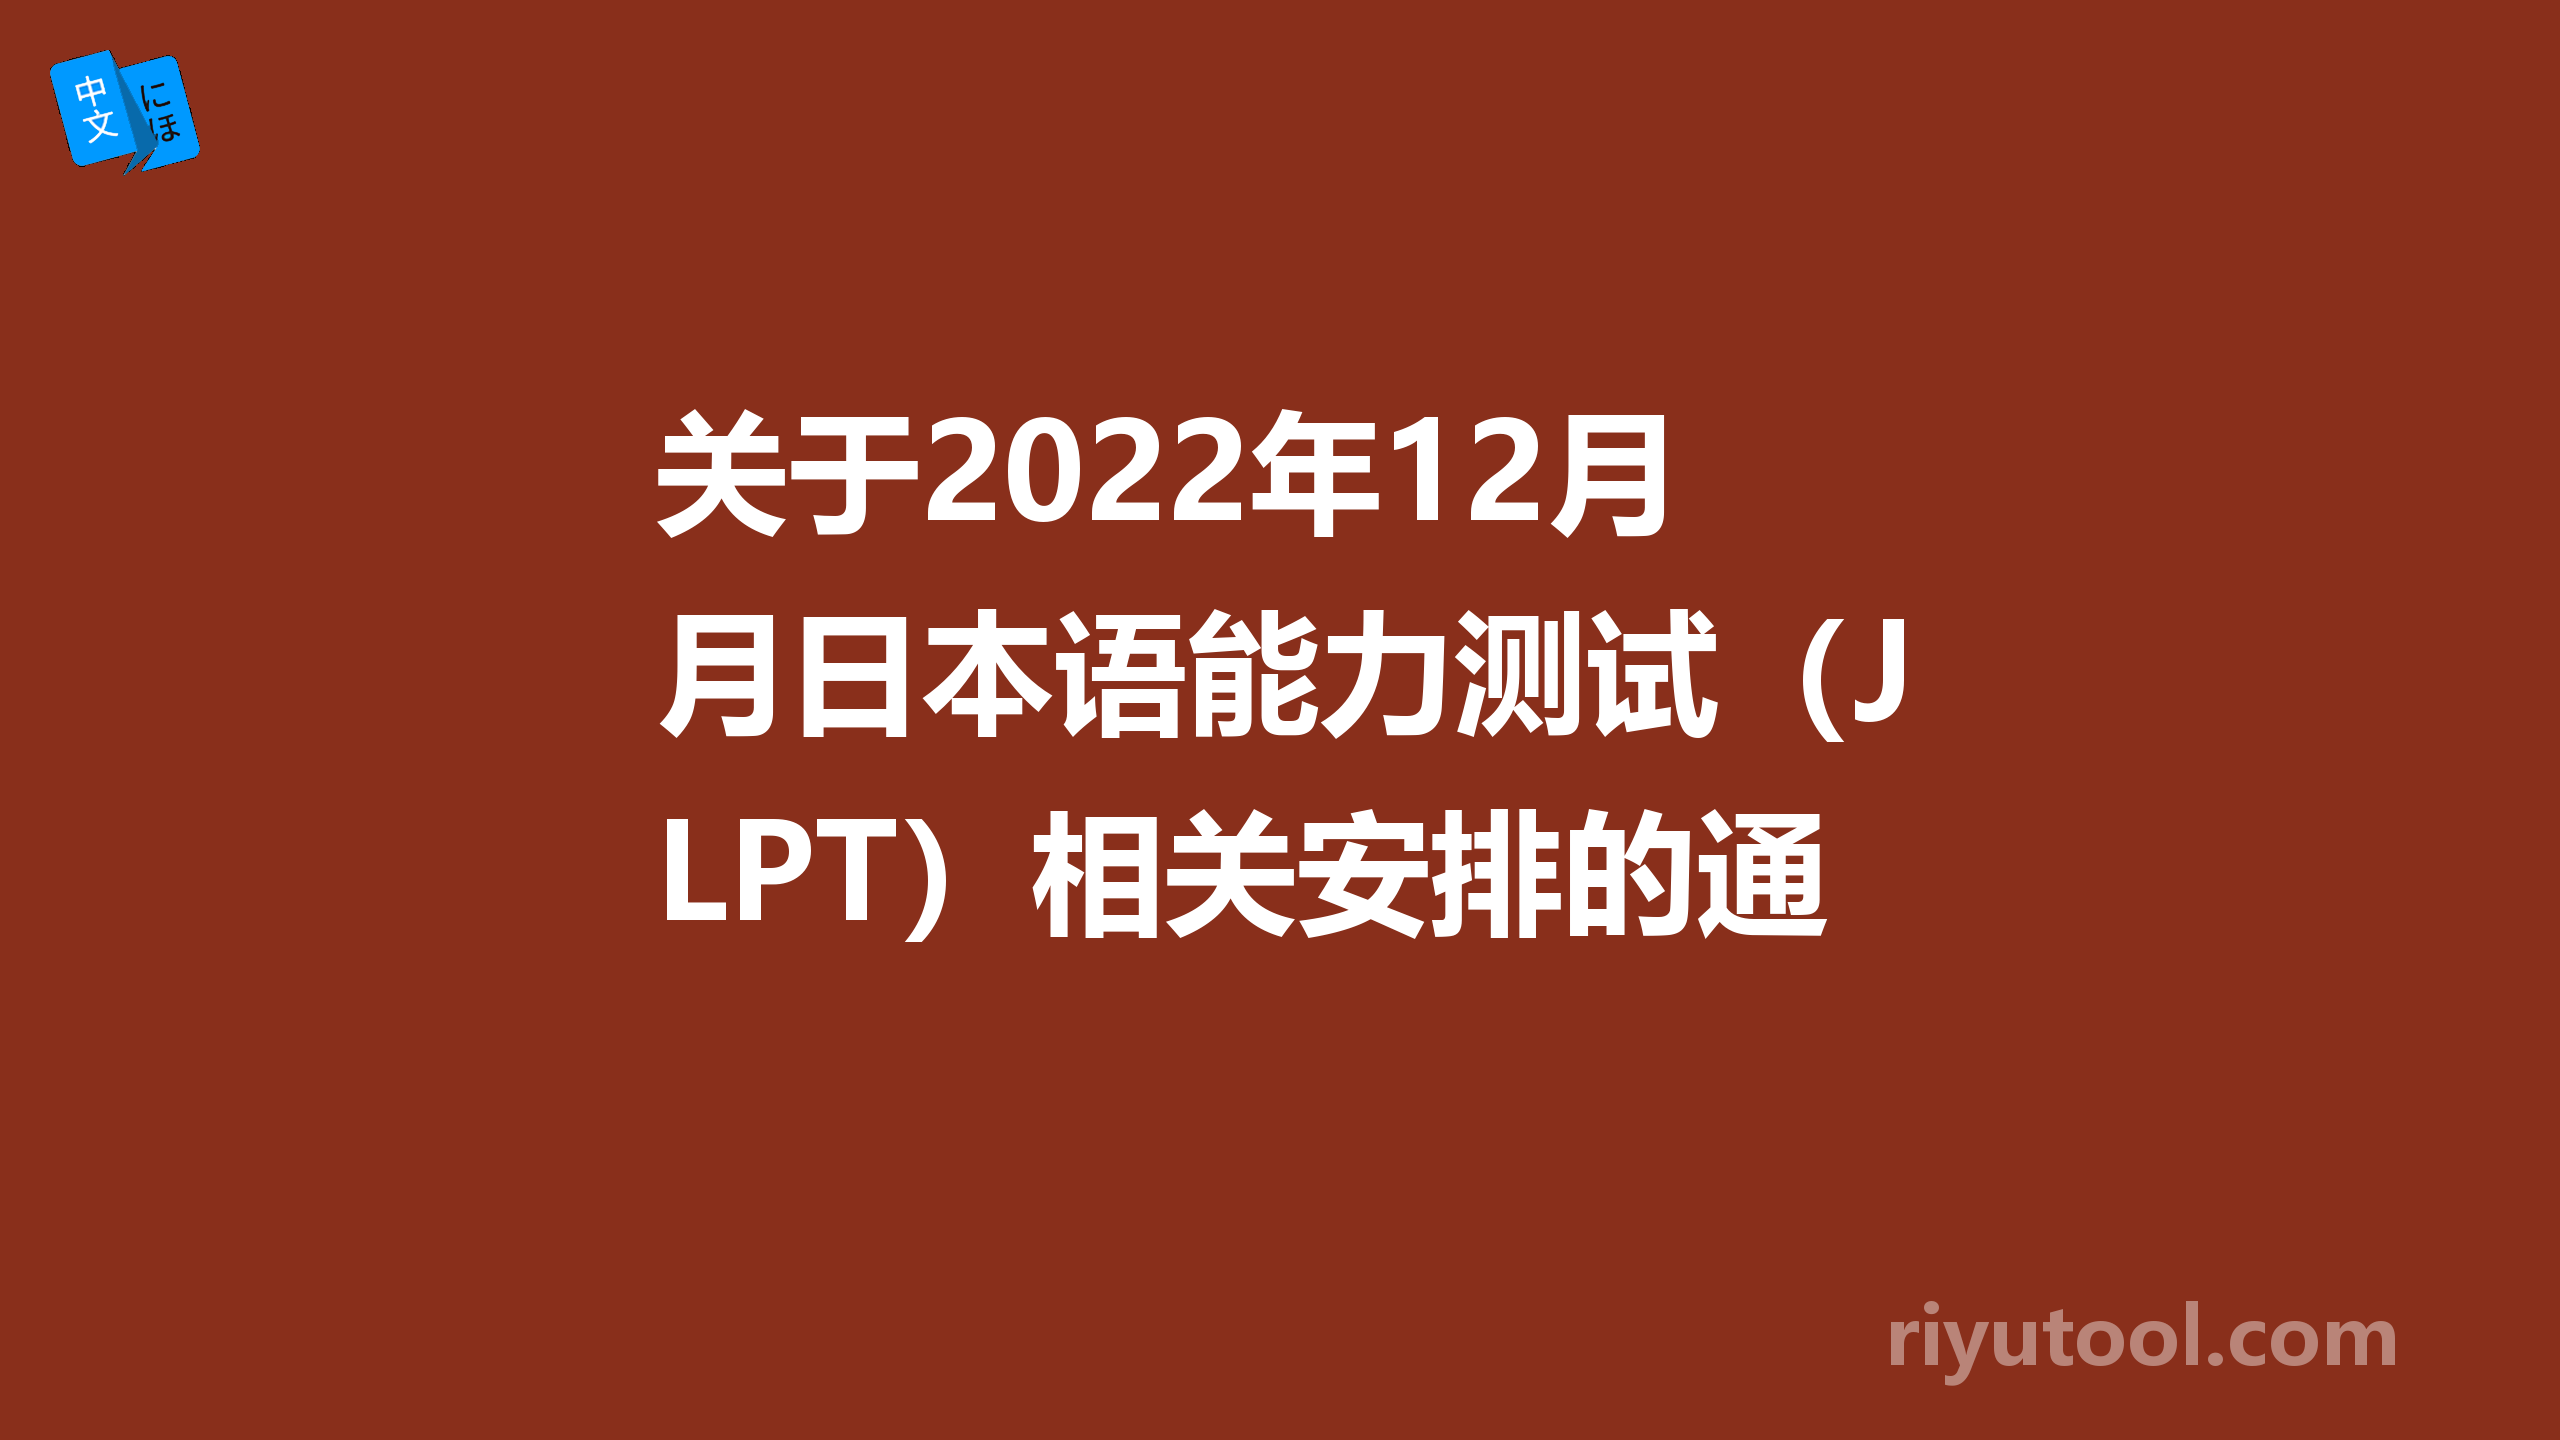 关于2022年12月日本语能力测试（JLPT）相关安排的通知